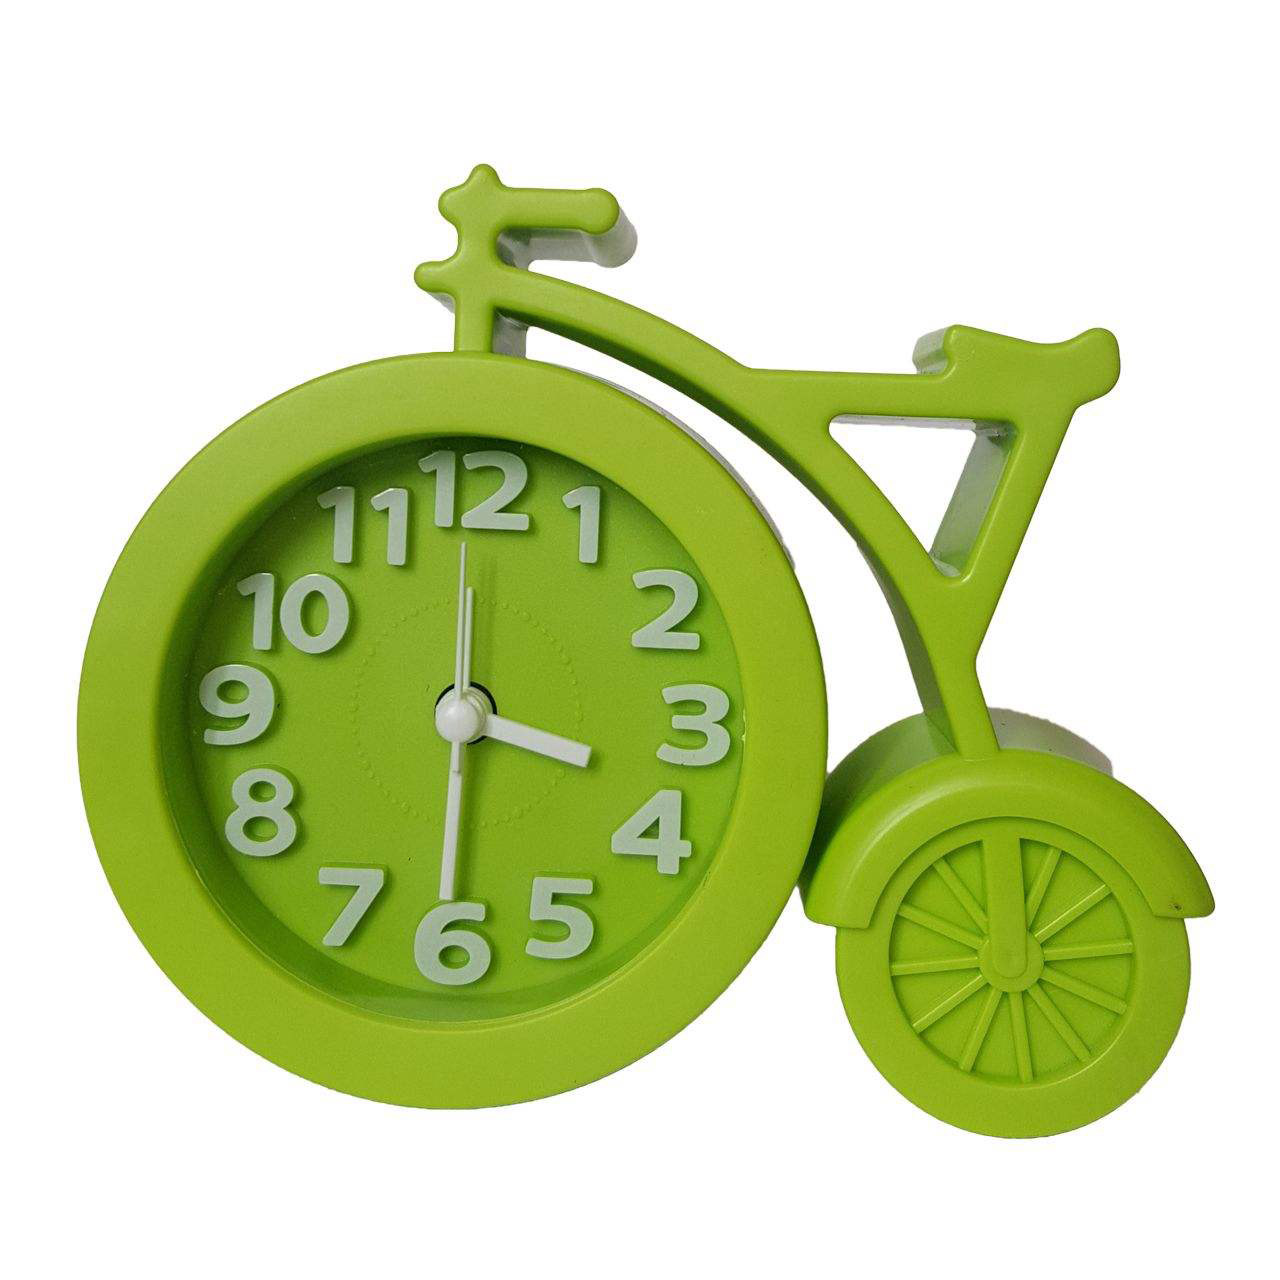 ساعت رومیزی مدل دوچرخه کد 12095